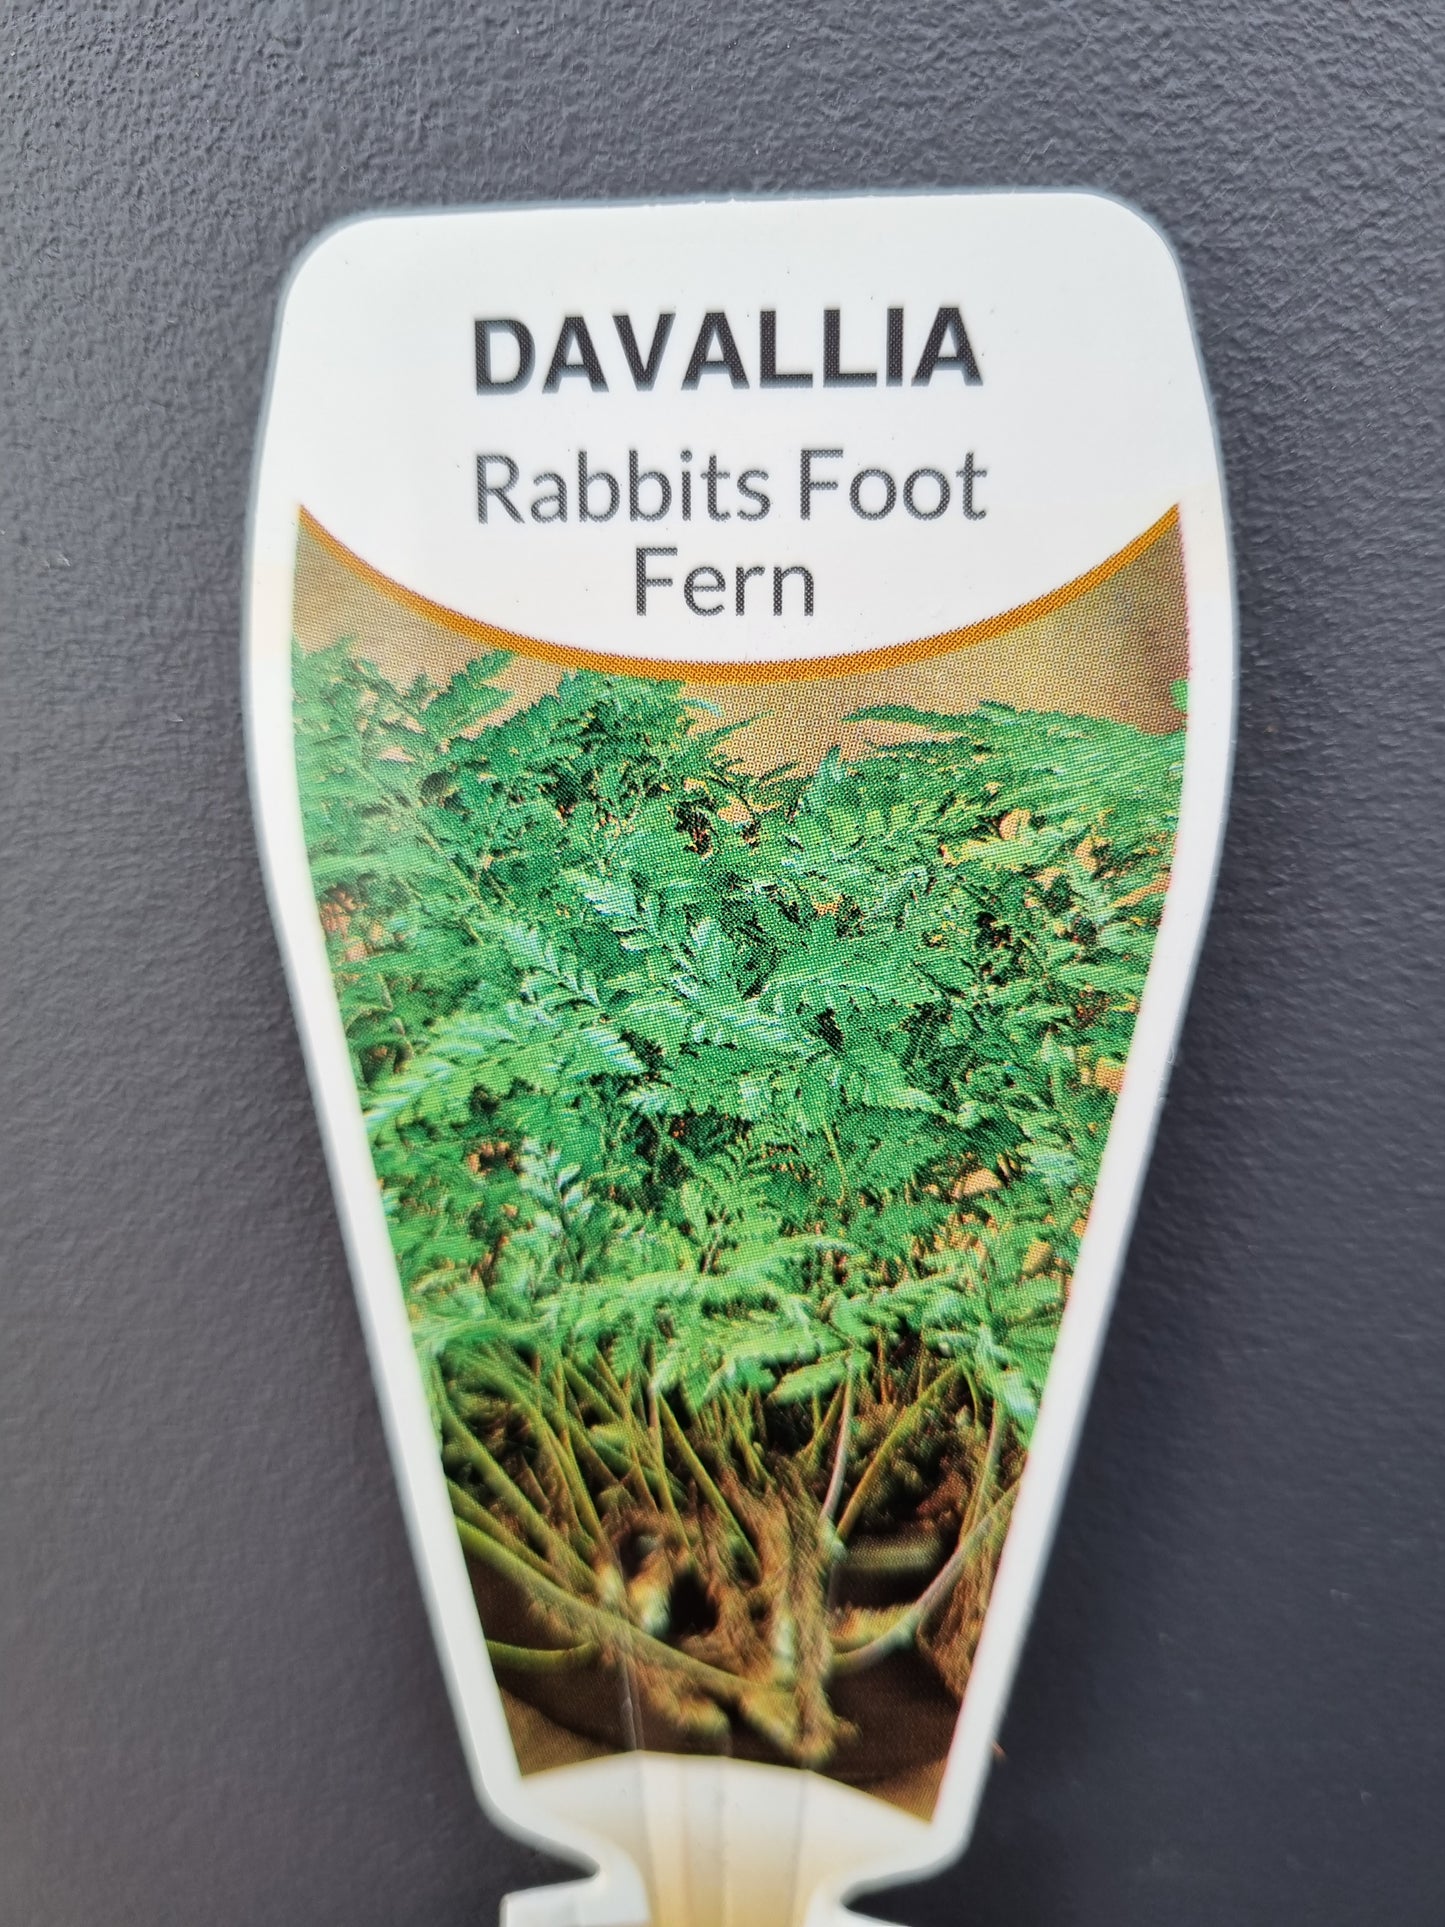 Rabbits Foot Fern- Davallia